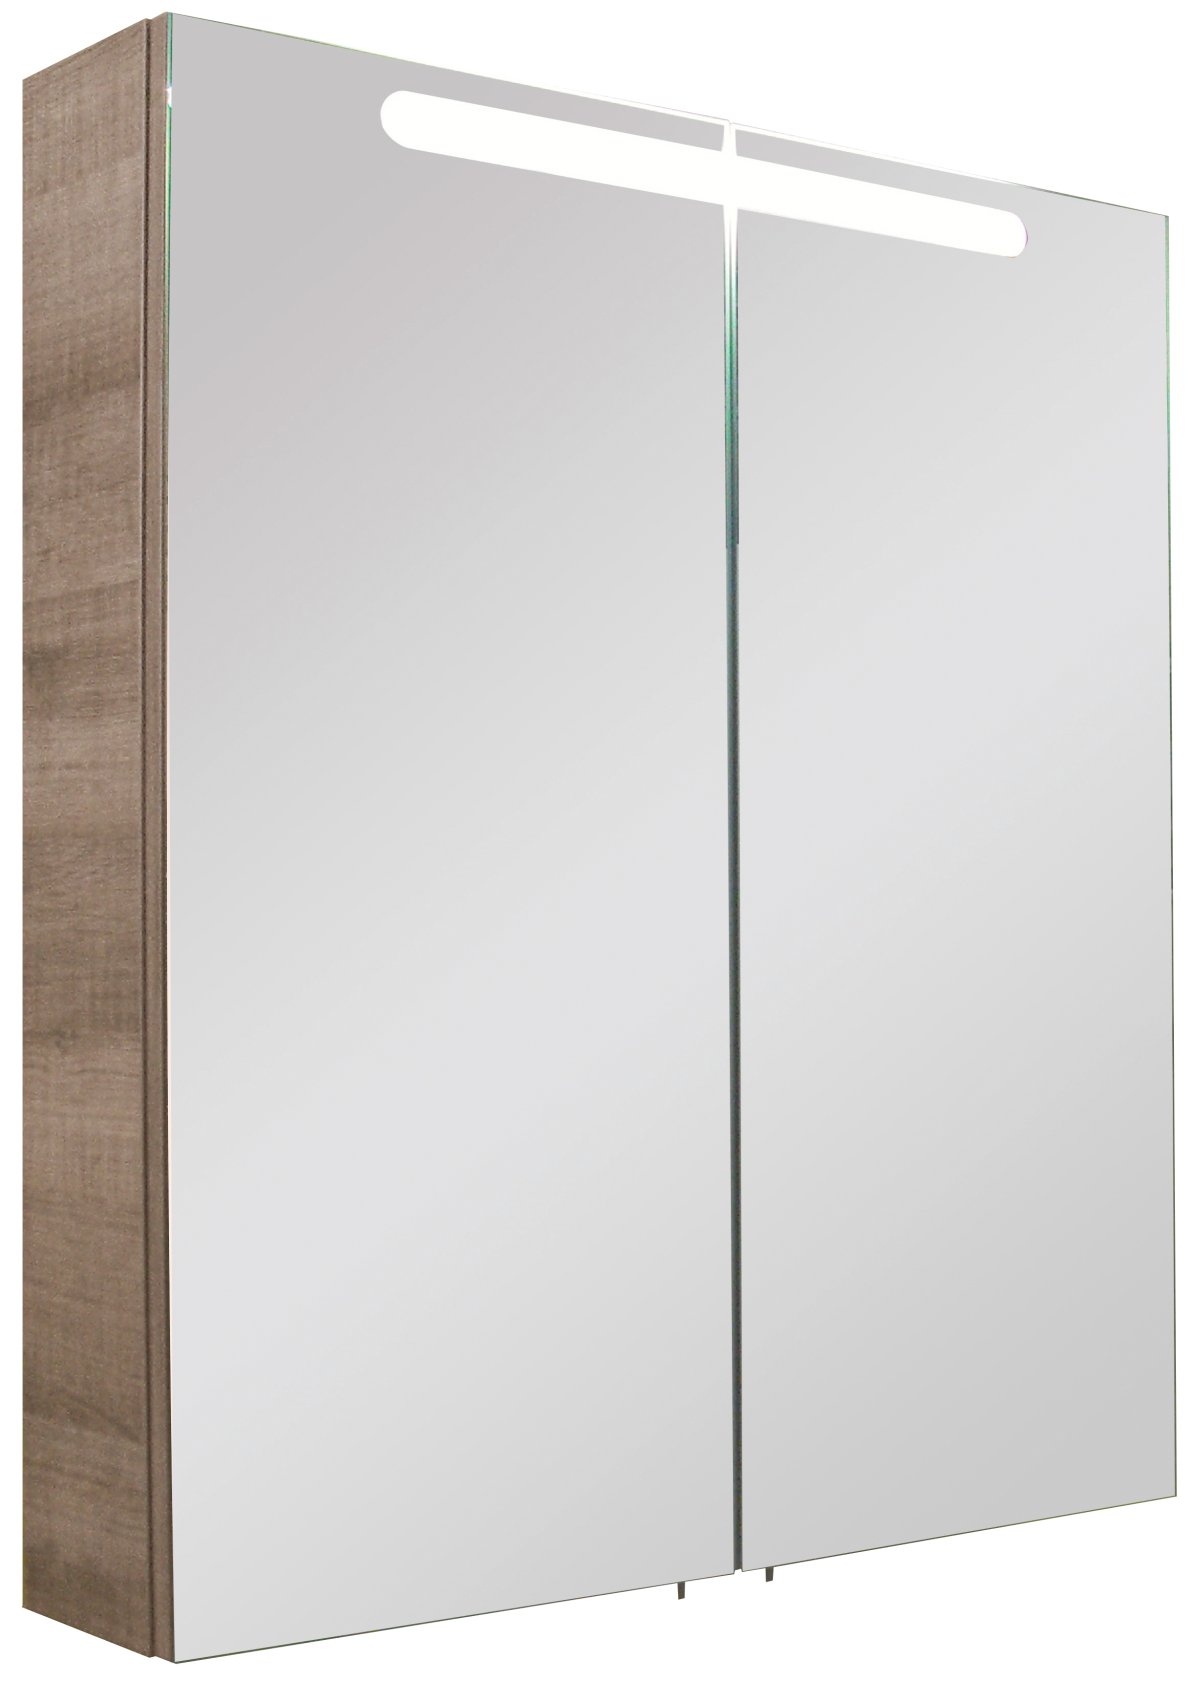 LED Spiegelschrank A-Vero Grau kaufen | home24 | Spiegelschränke